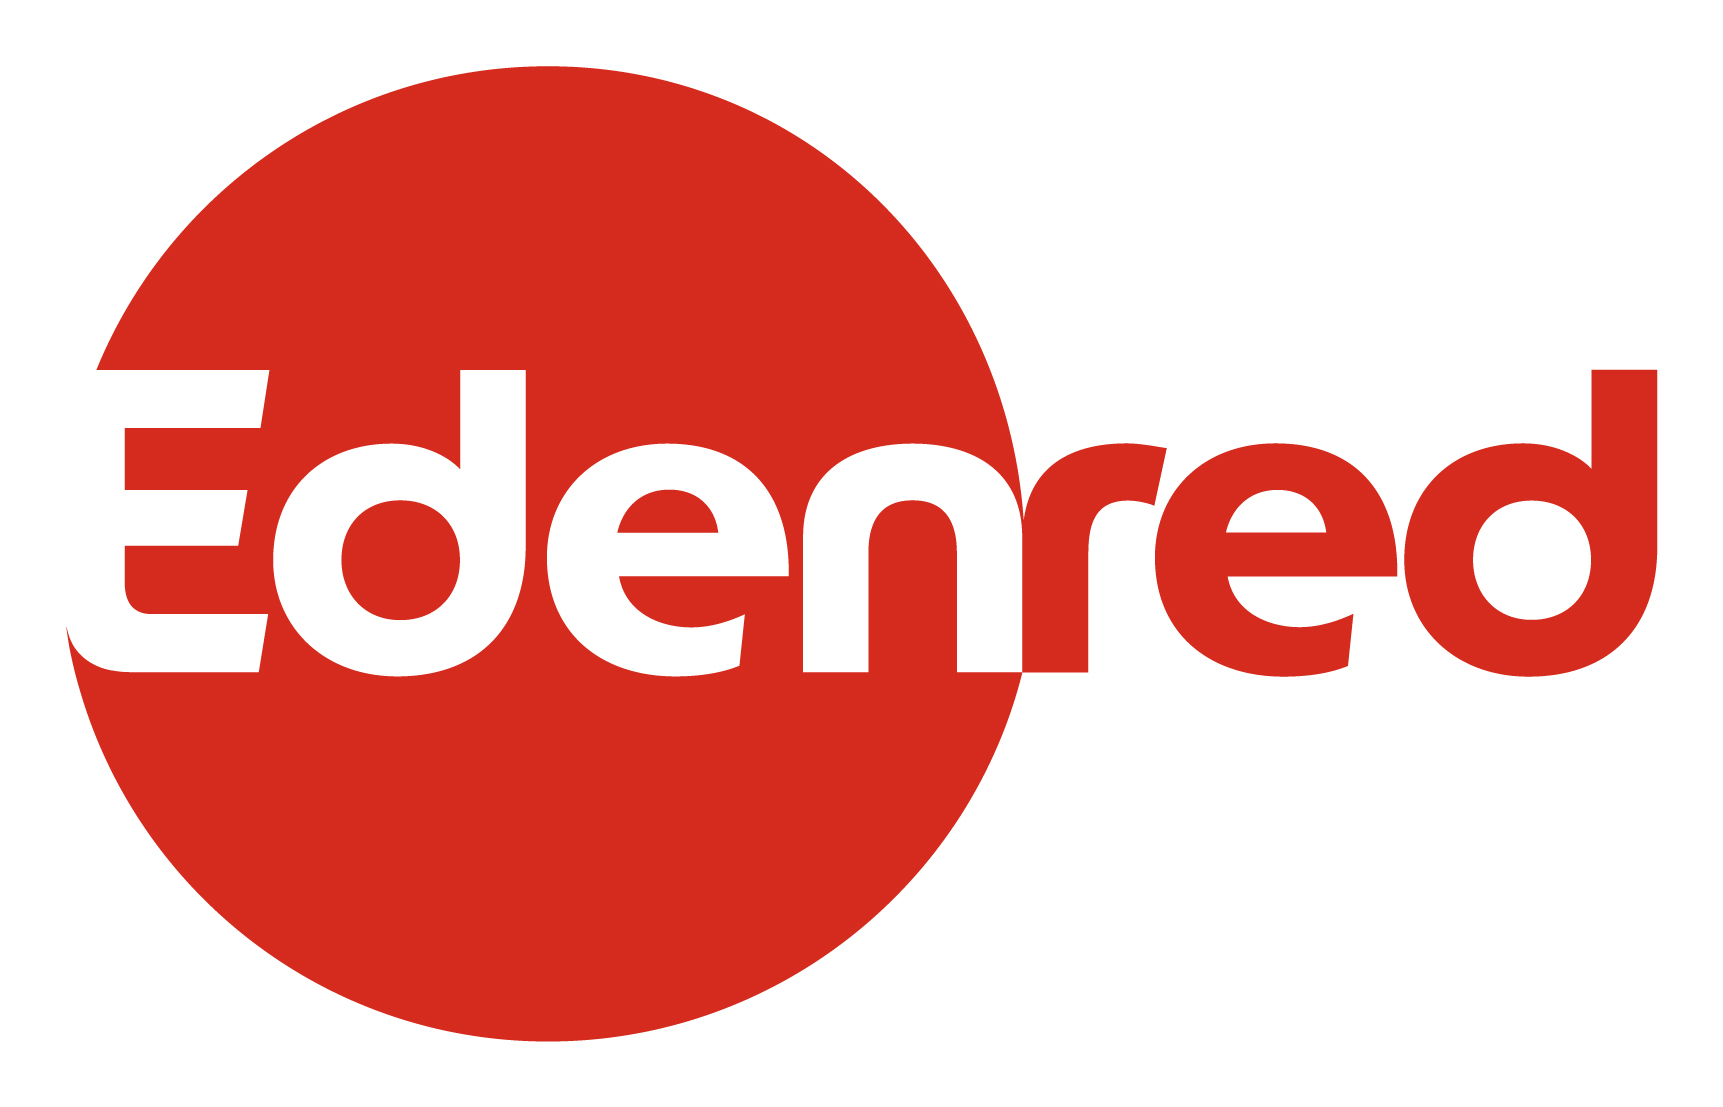 Edenred Deutschland GmbH Logo